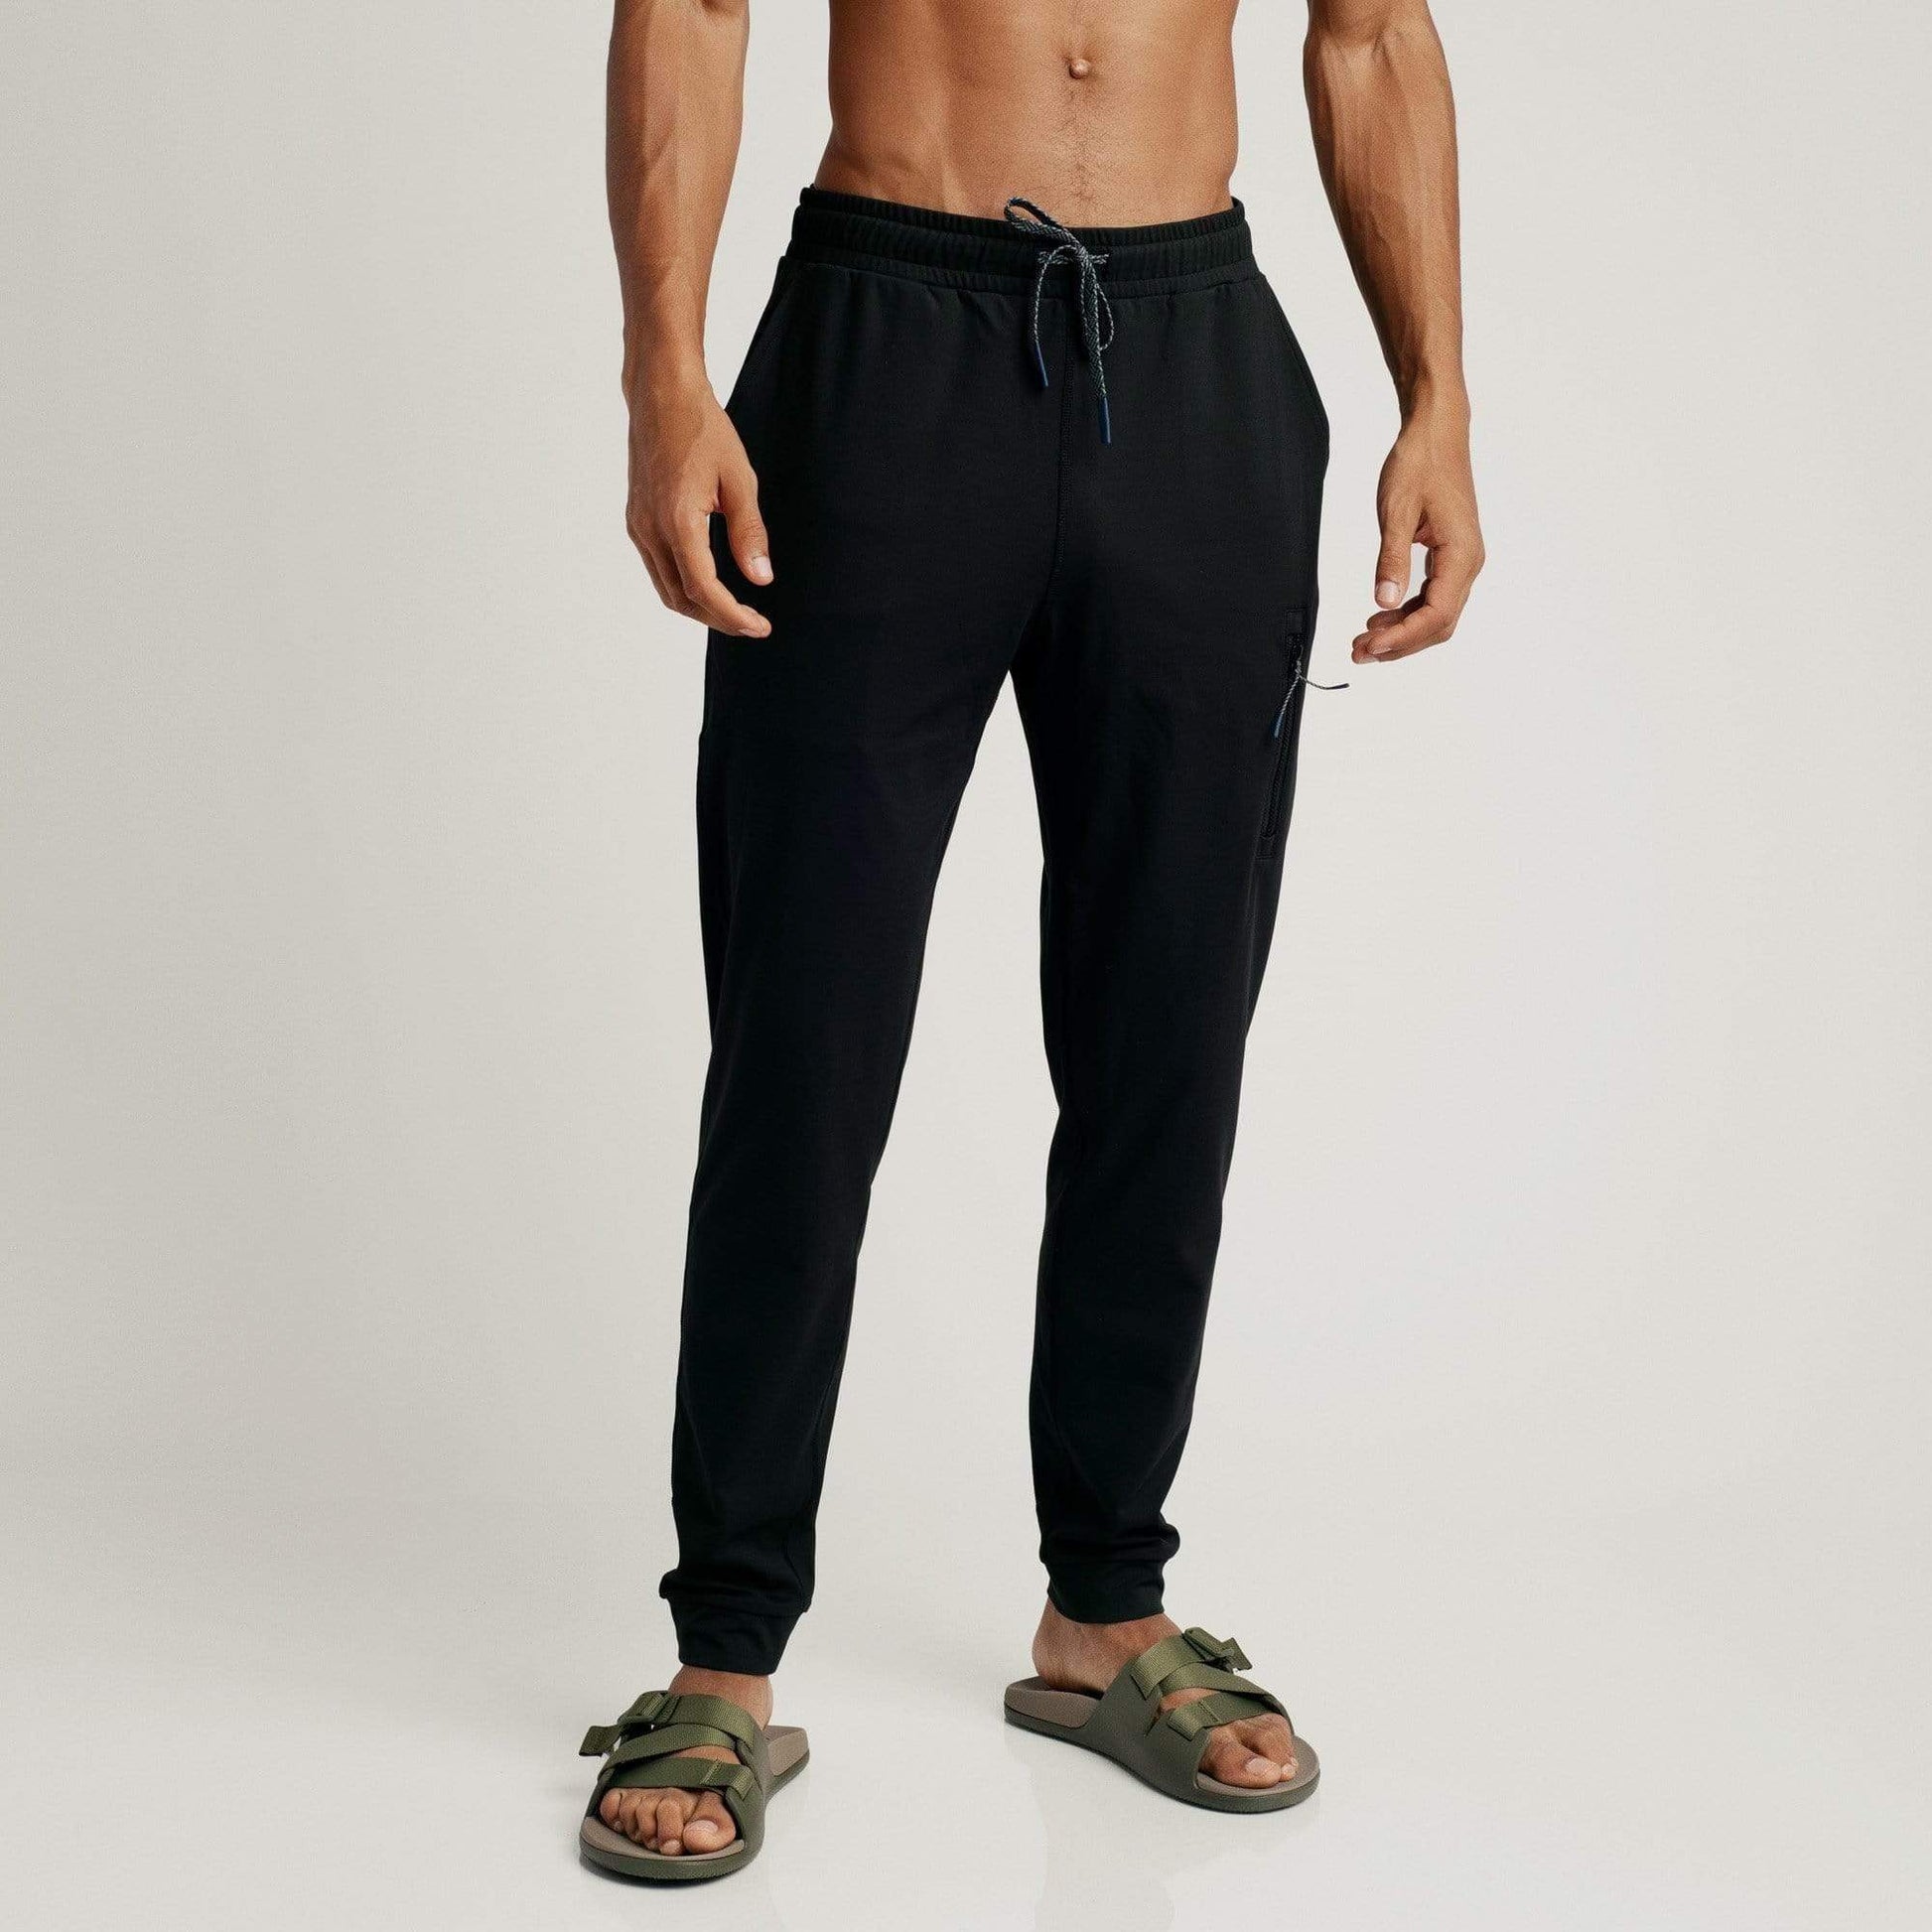 Tapout men's jogger Lifestyle black 940008 - Stylish jogging